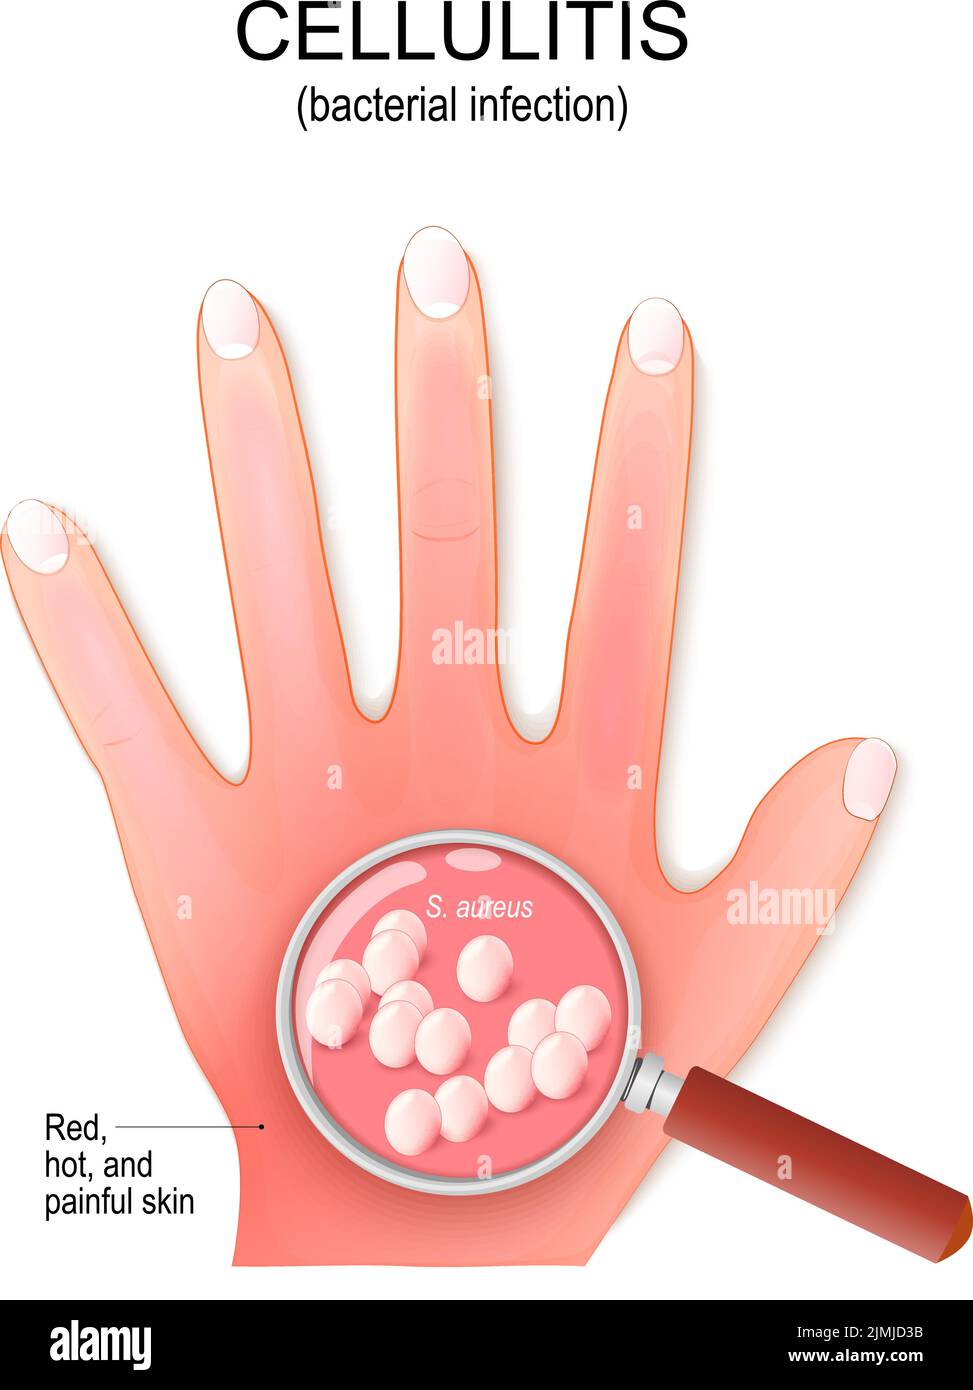 Zellulitis. Die Handfläche des Menschen mit einer bakteriellen Infektion. Nahaufnahme der Bakterienkolonie. Lupe und Staphylococcus aureus. vektorgrafik Stock Vektor